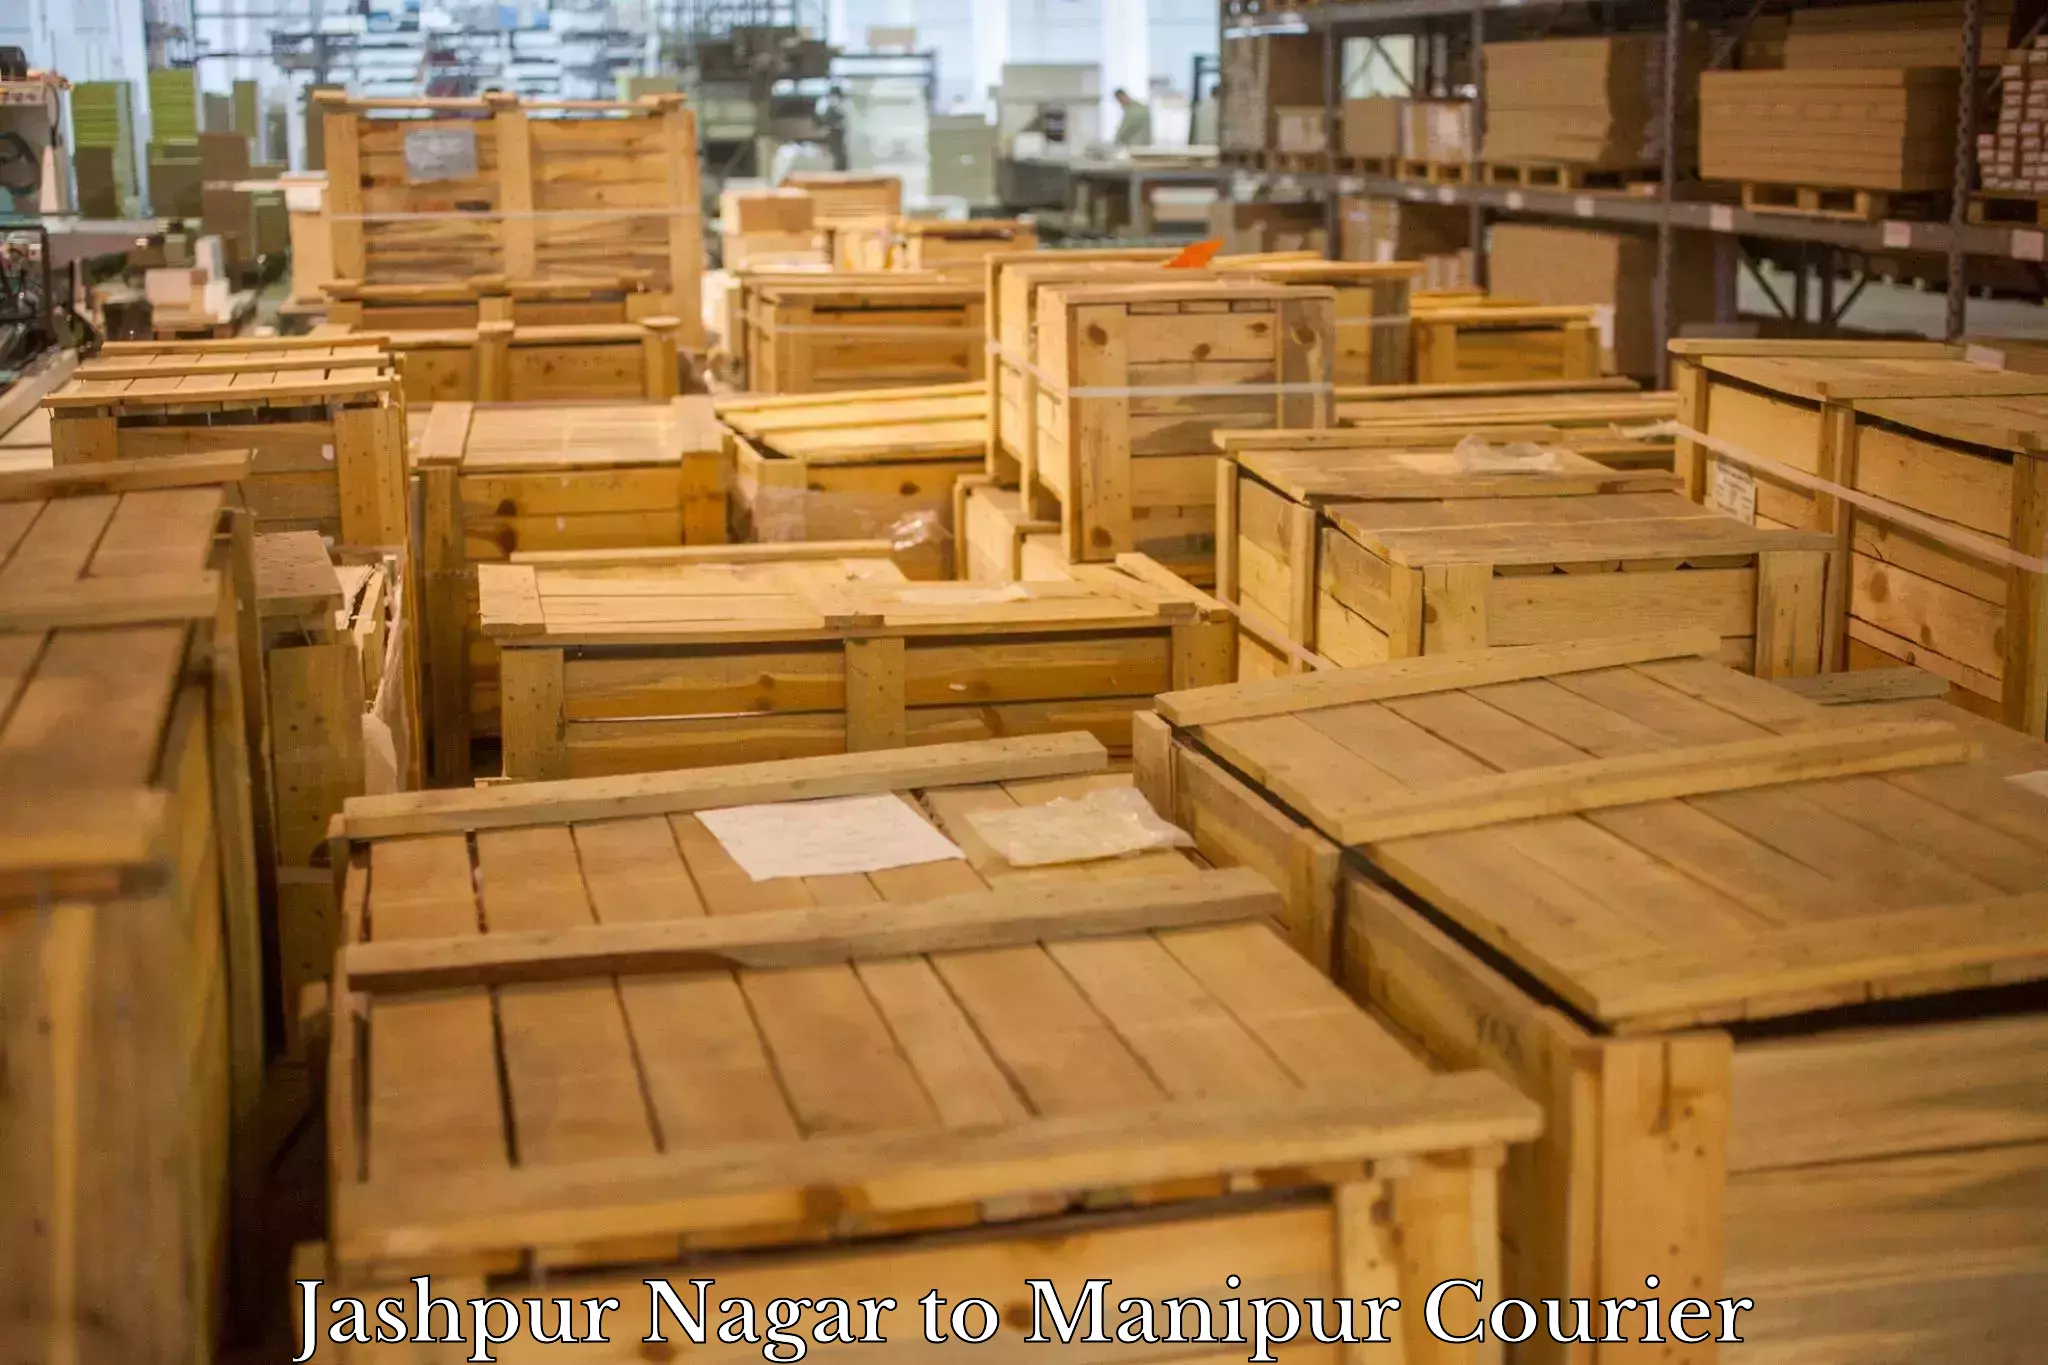 High-performance logistics Jashpur Nagar to Manipur